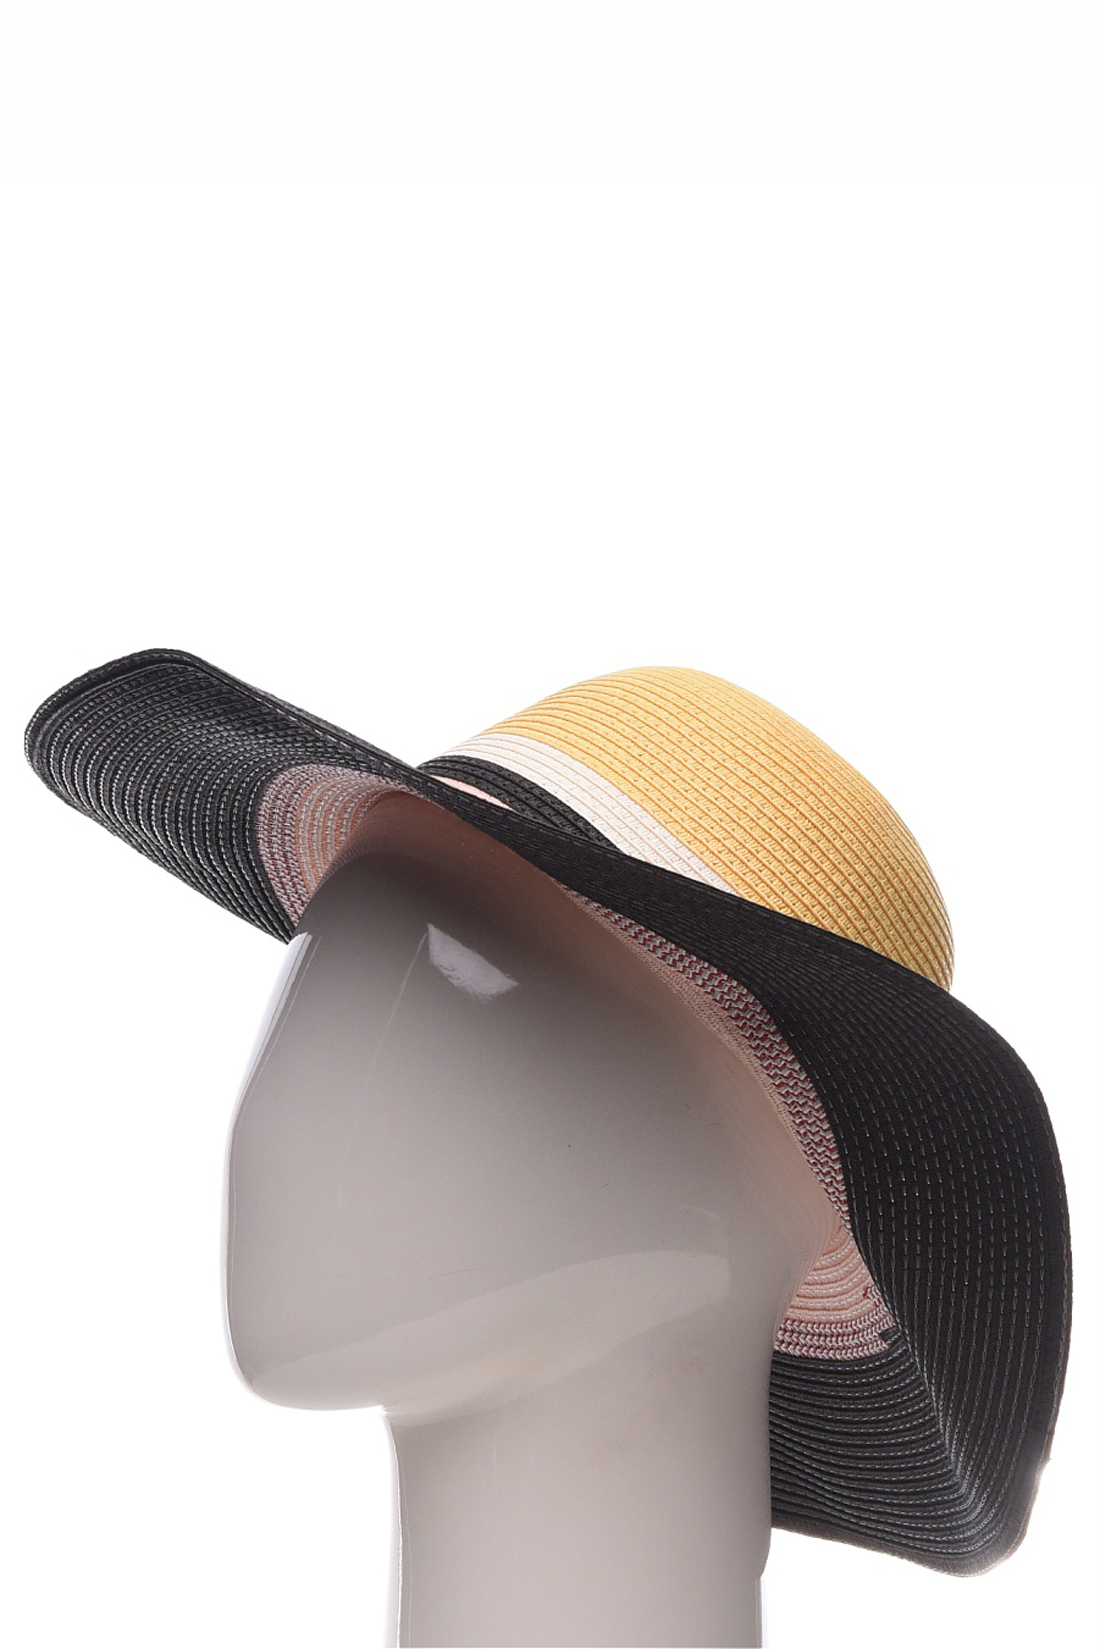 Шляпа с широкими полосами (арт. baon B349002), размер Б/р 56, цвет multicolor#многоцветный